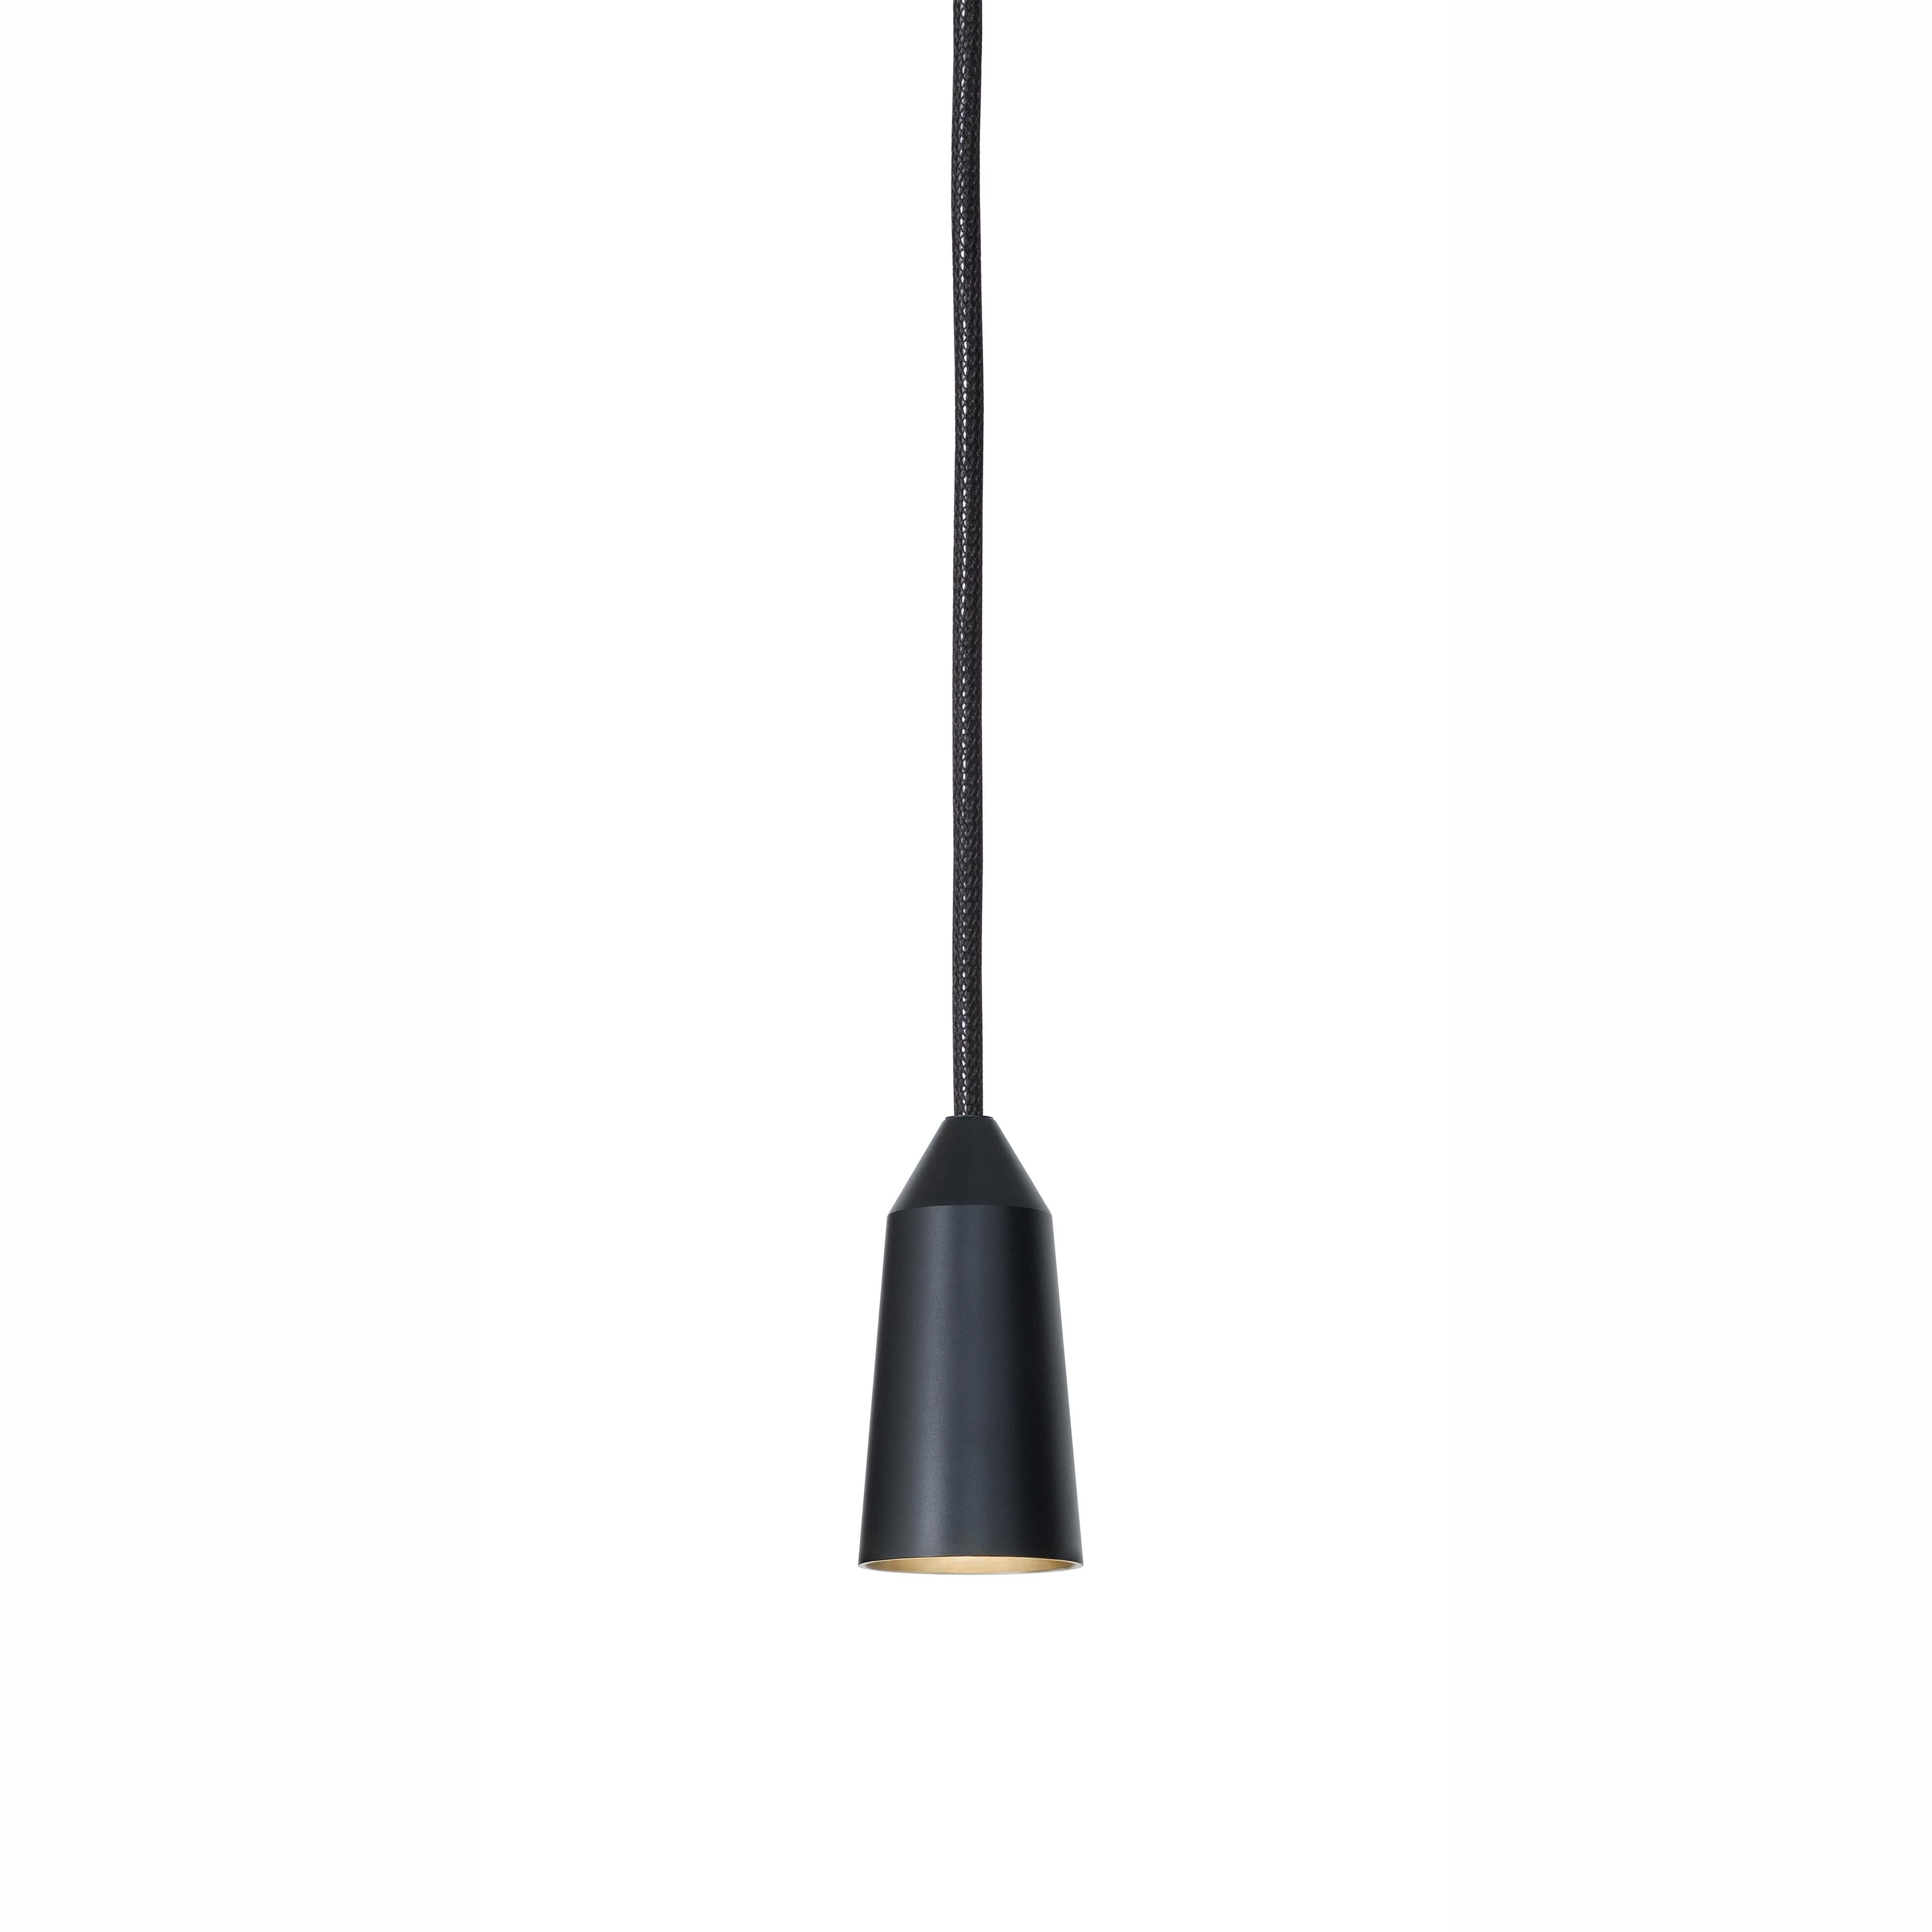 Swedish Henrik Tengler 3492-8 Massiv Black EDT by Konsthantverk For Sale